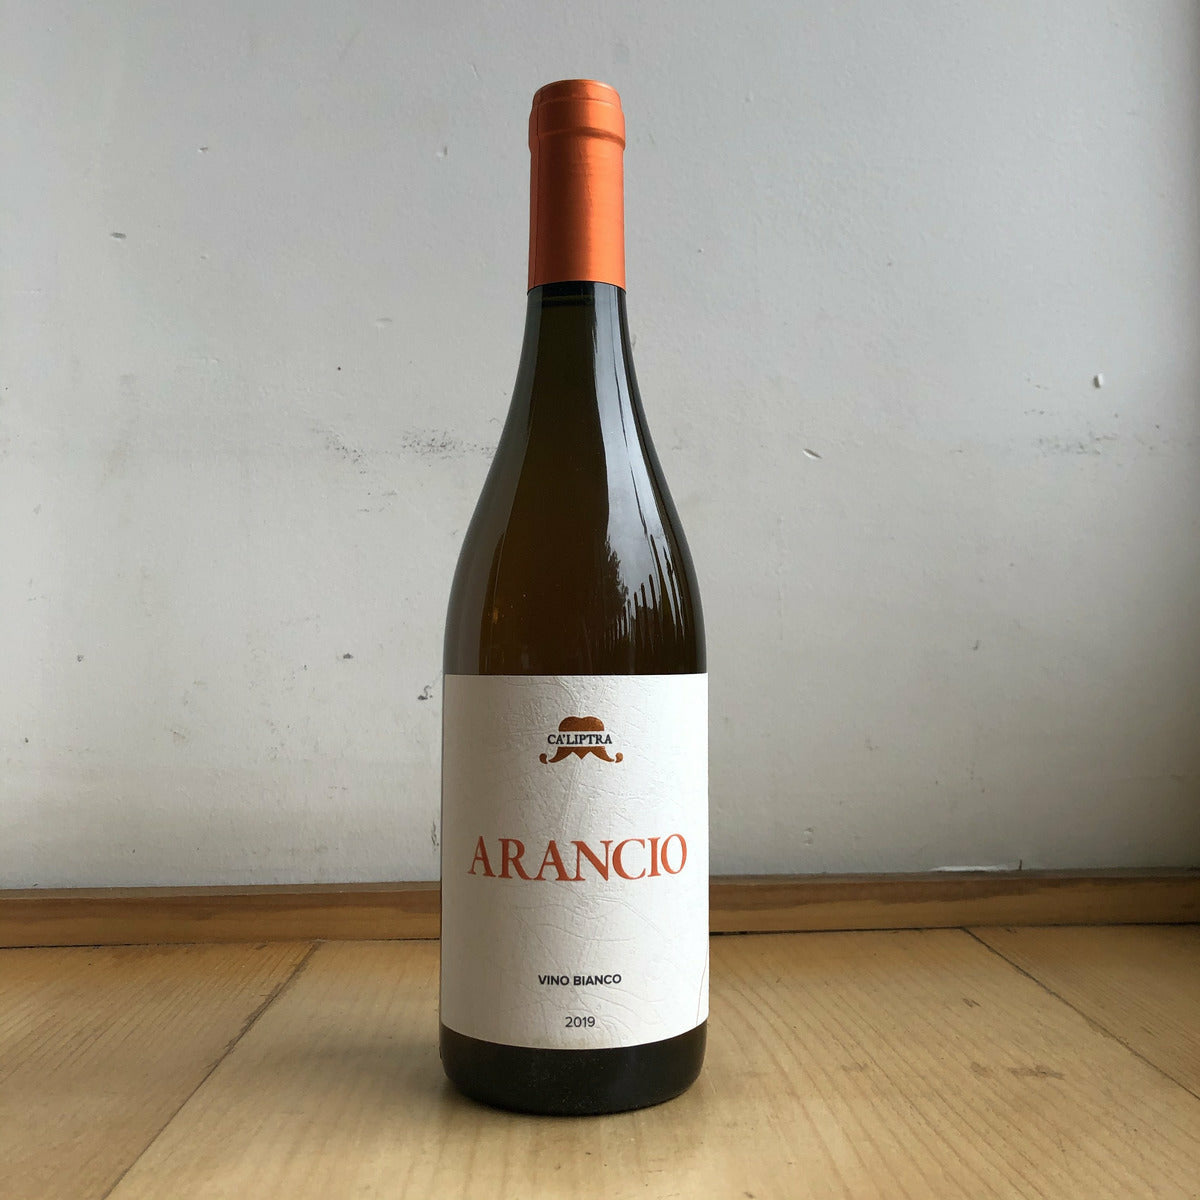 Ca'Liptra Vino Bianco "Arancio" 2019